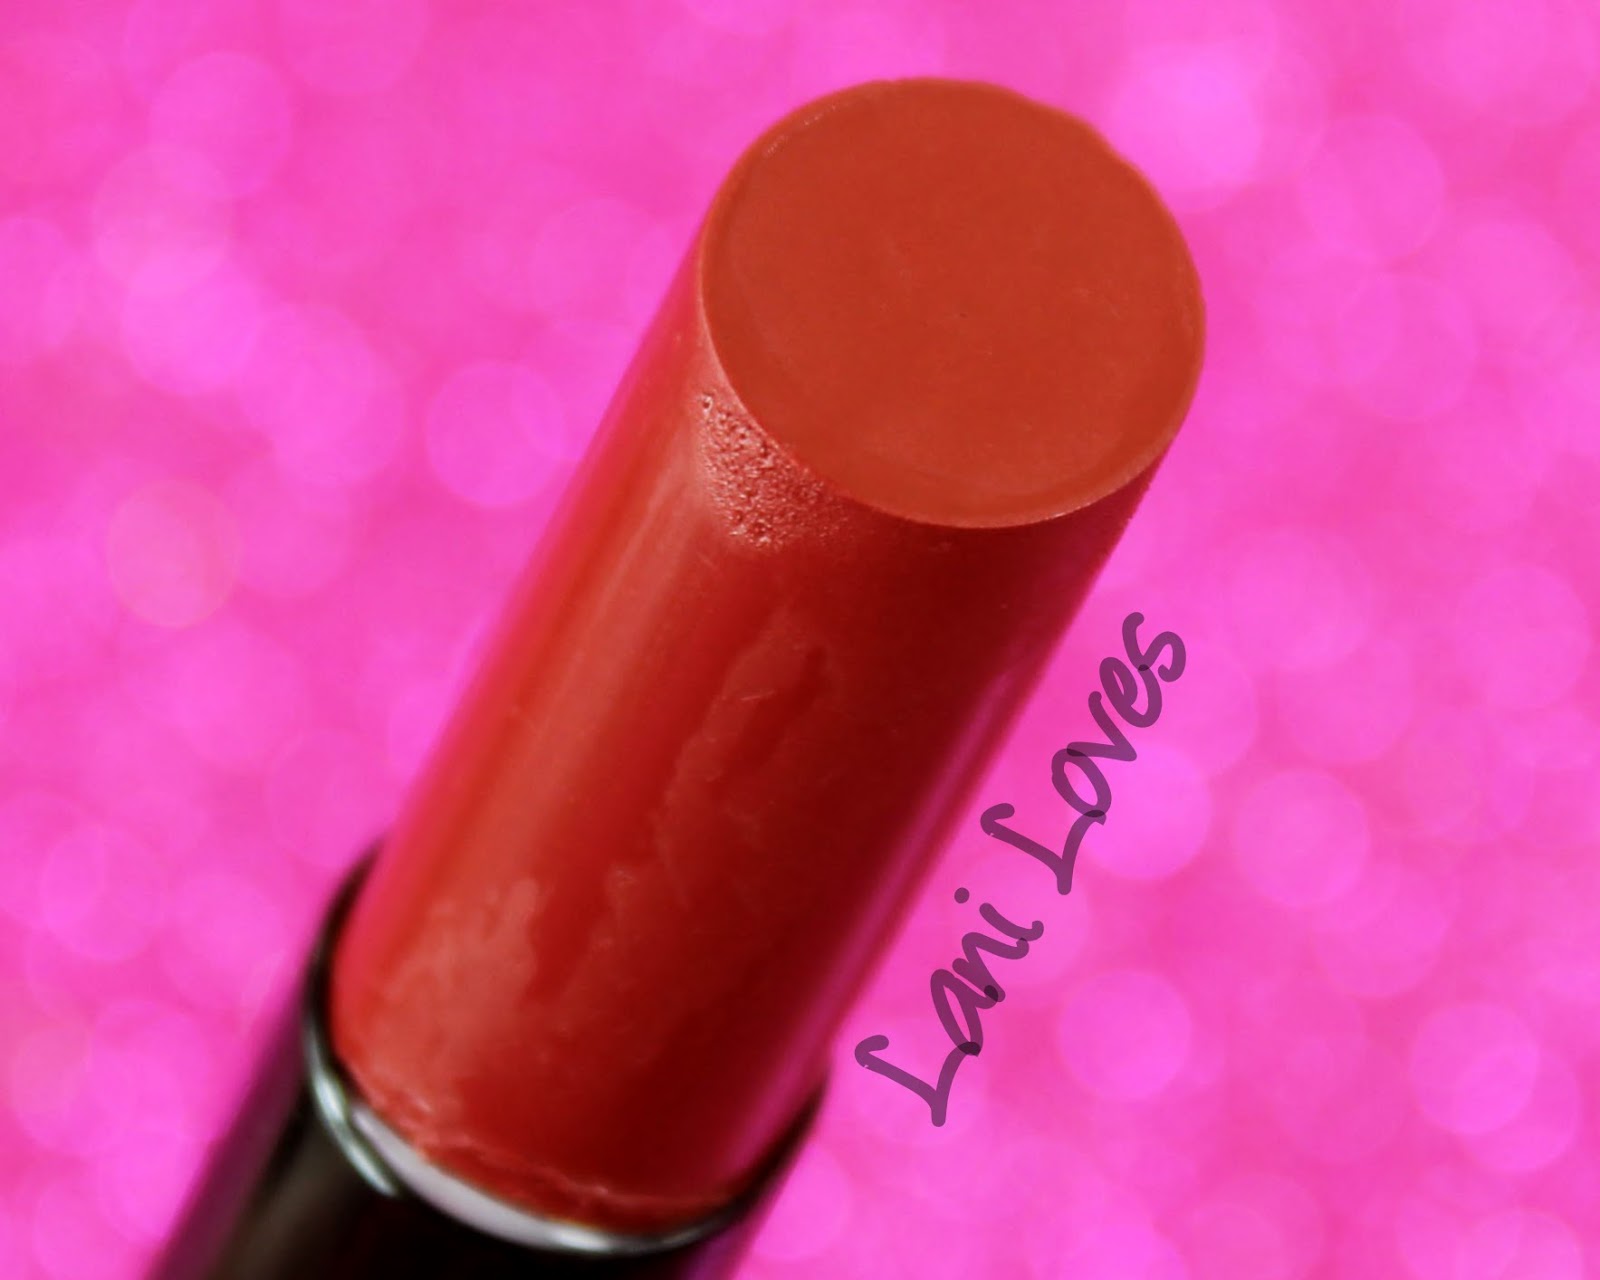 ZA Vibrant Moist Lipstick - RD555 swatches & review